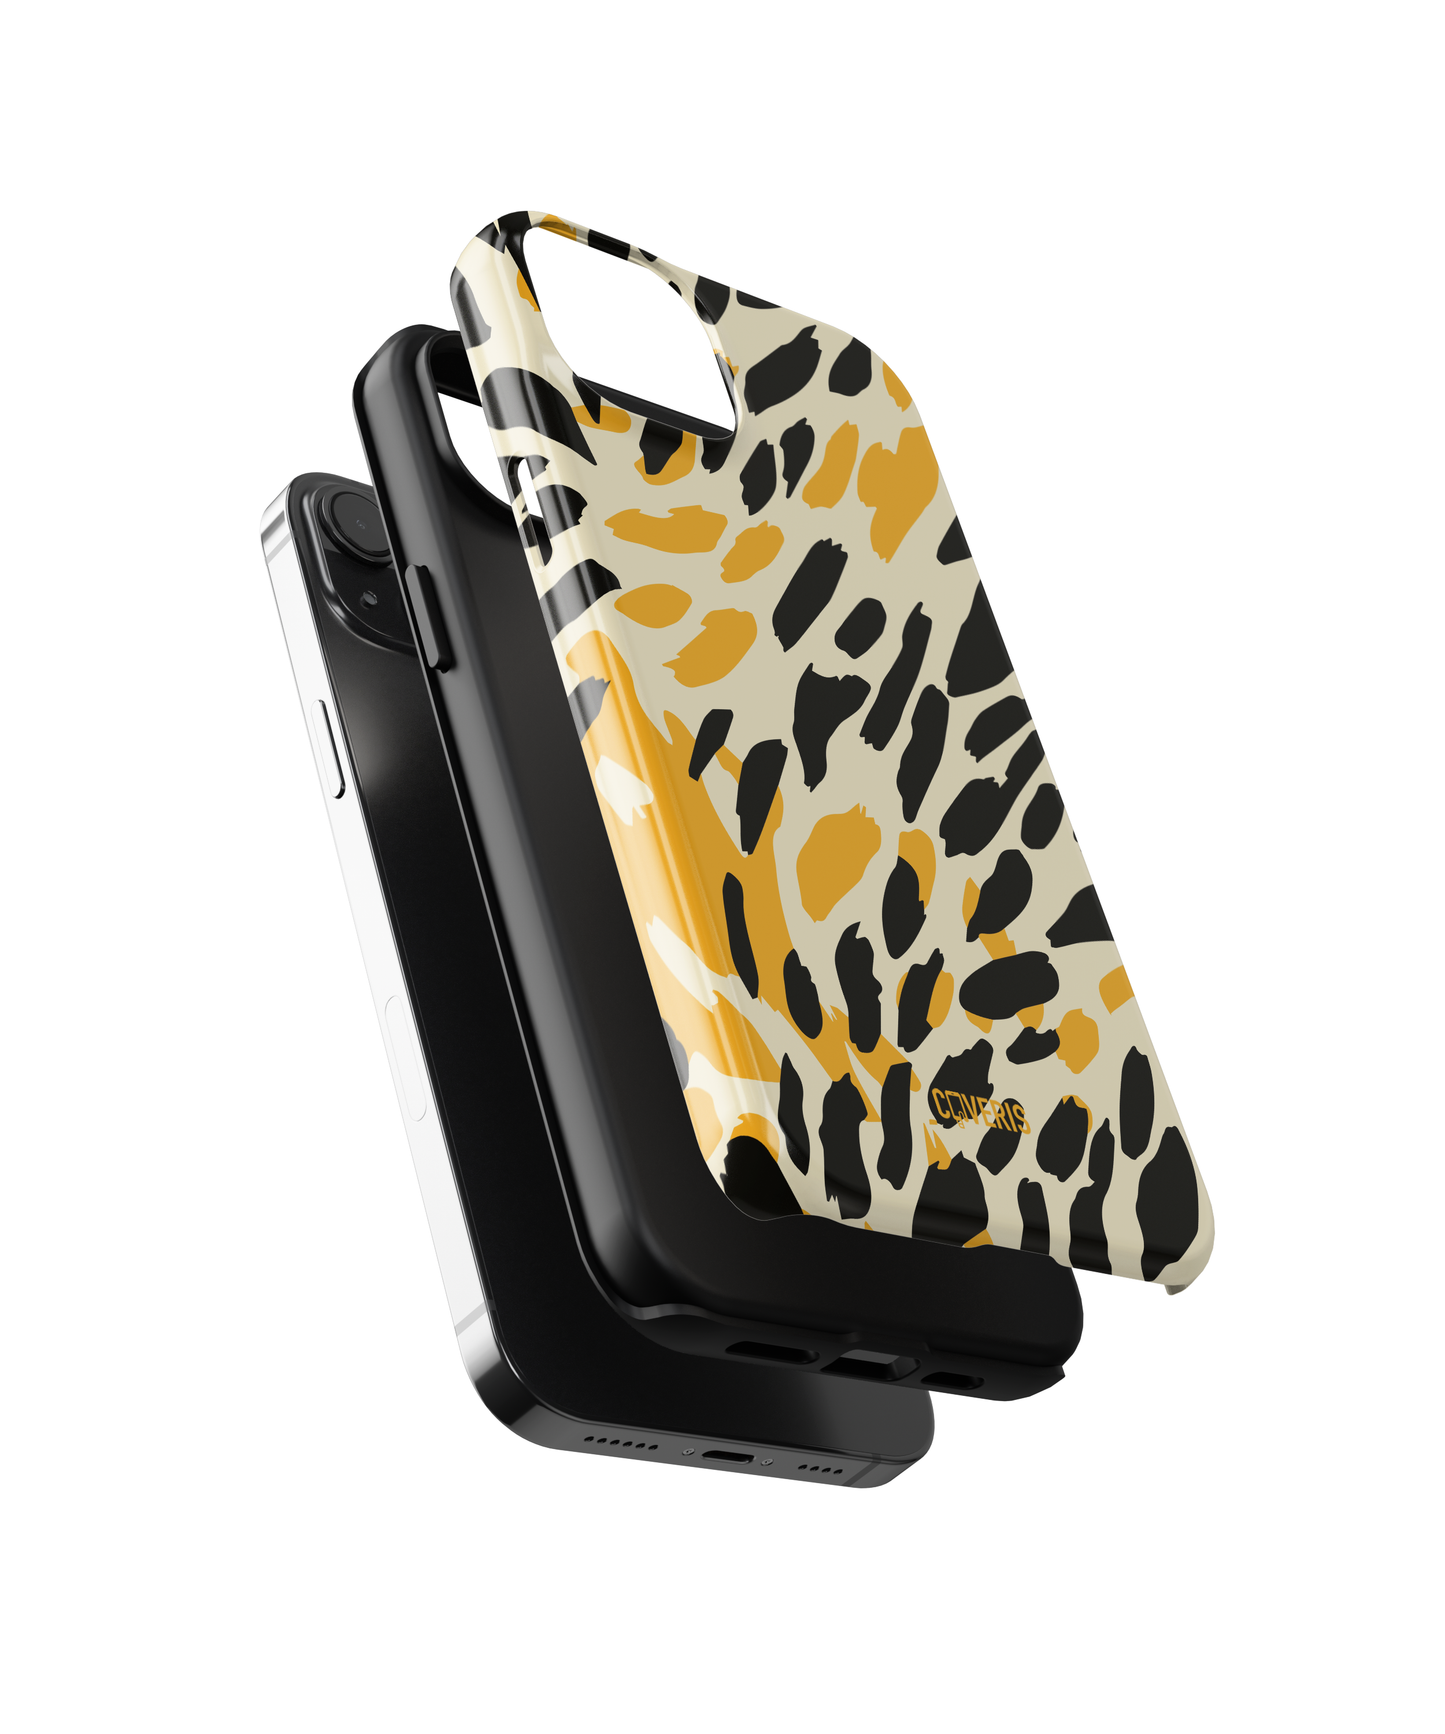 Cheetah - Samsung Galaxy S21 fe phone case